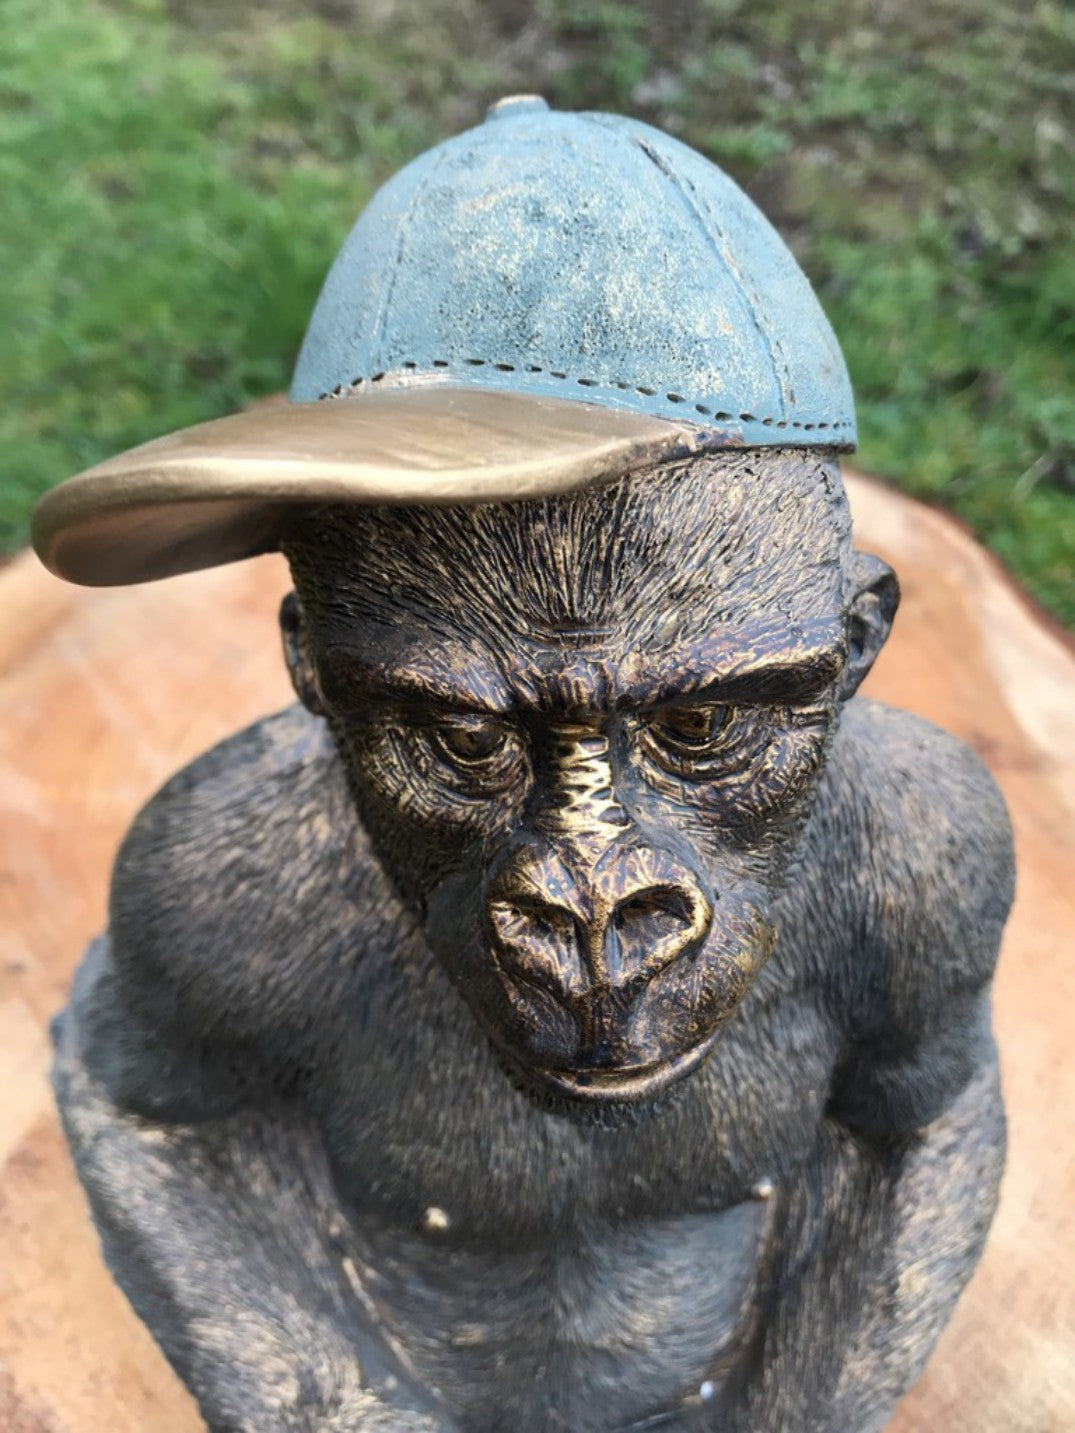 12 Tall Detailed Sitting Resin Gorilla With Baseball Cap On Decorative Figure